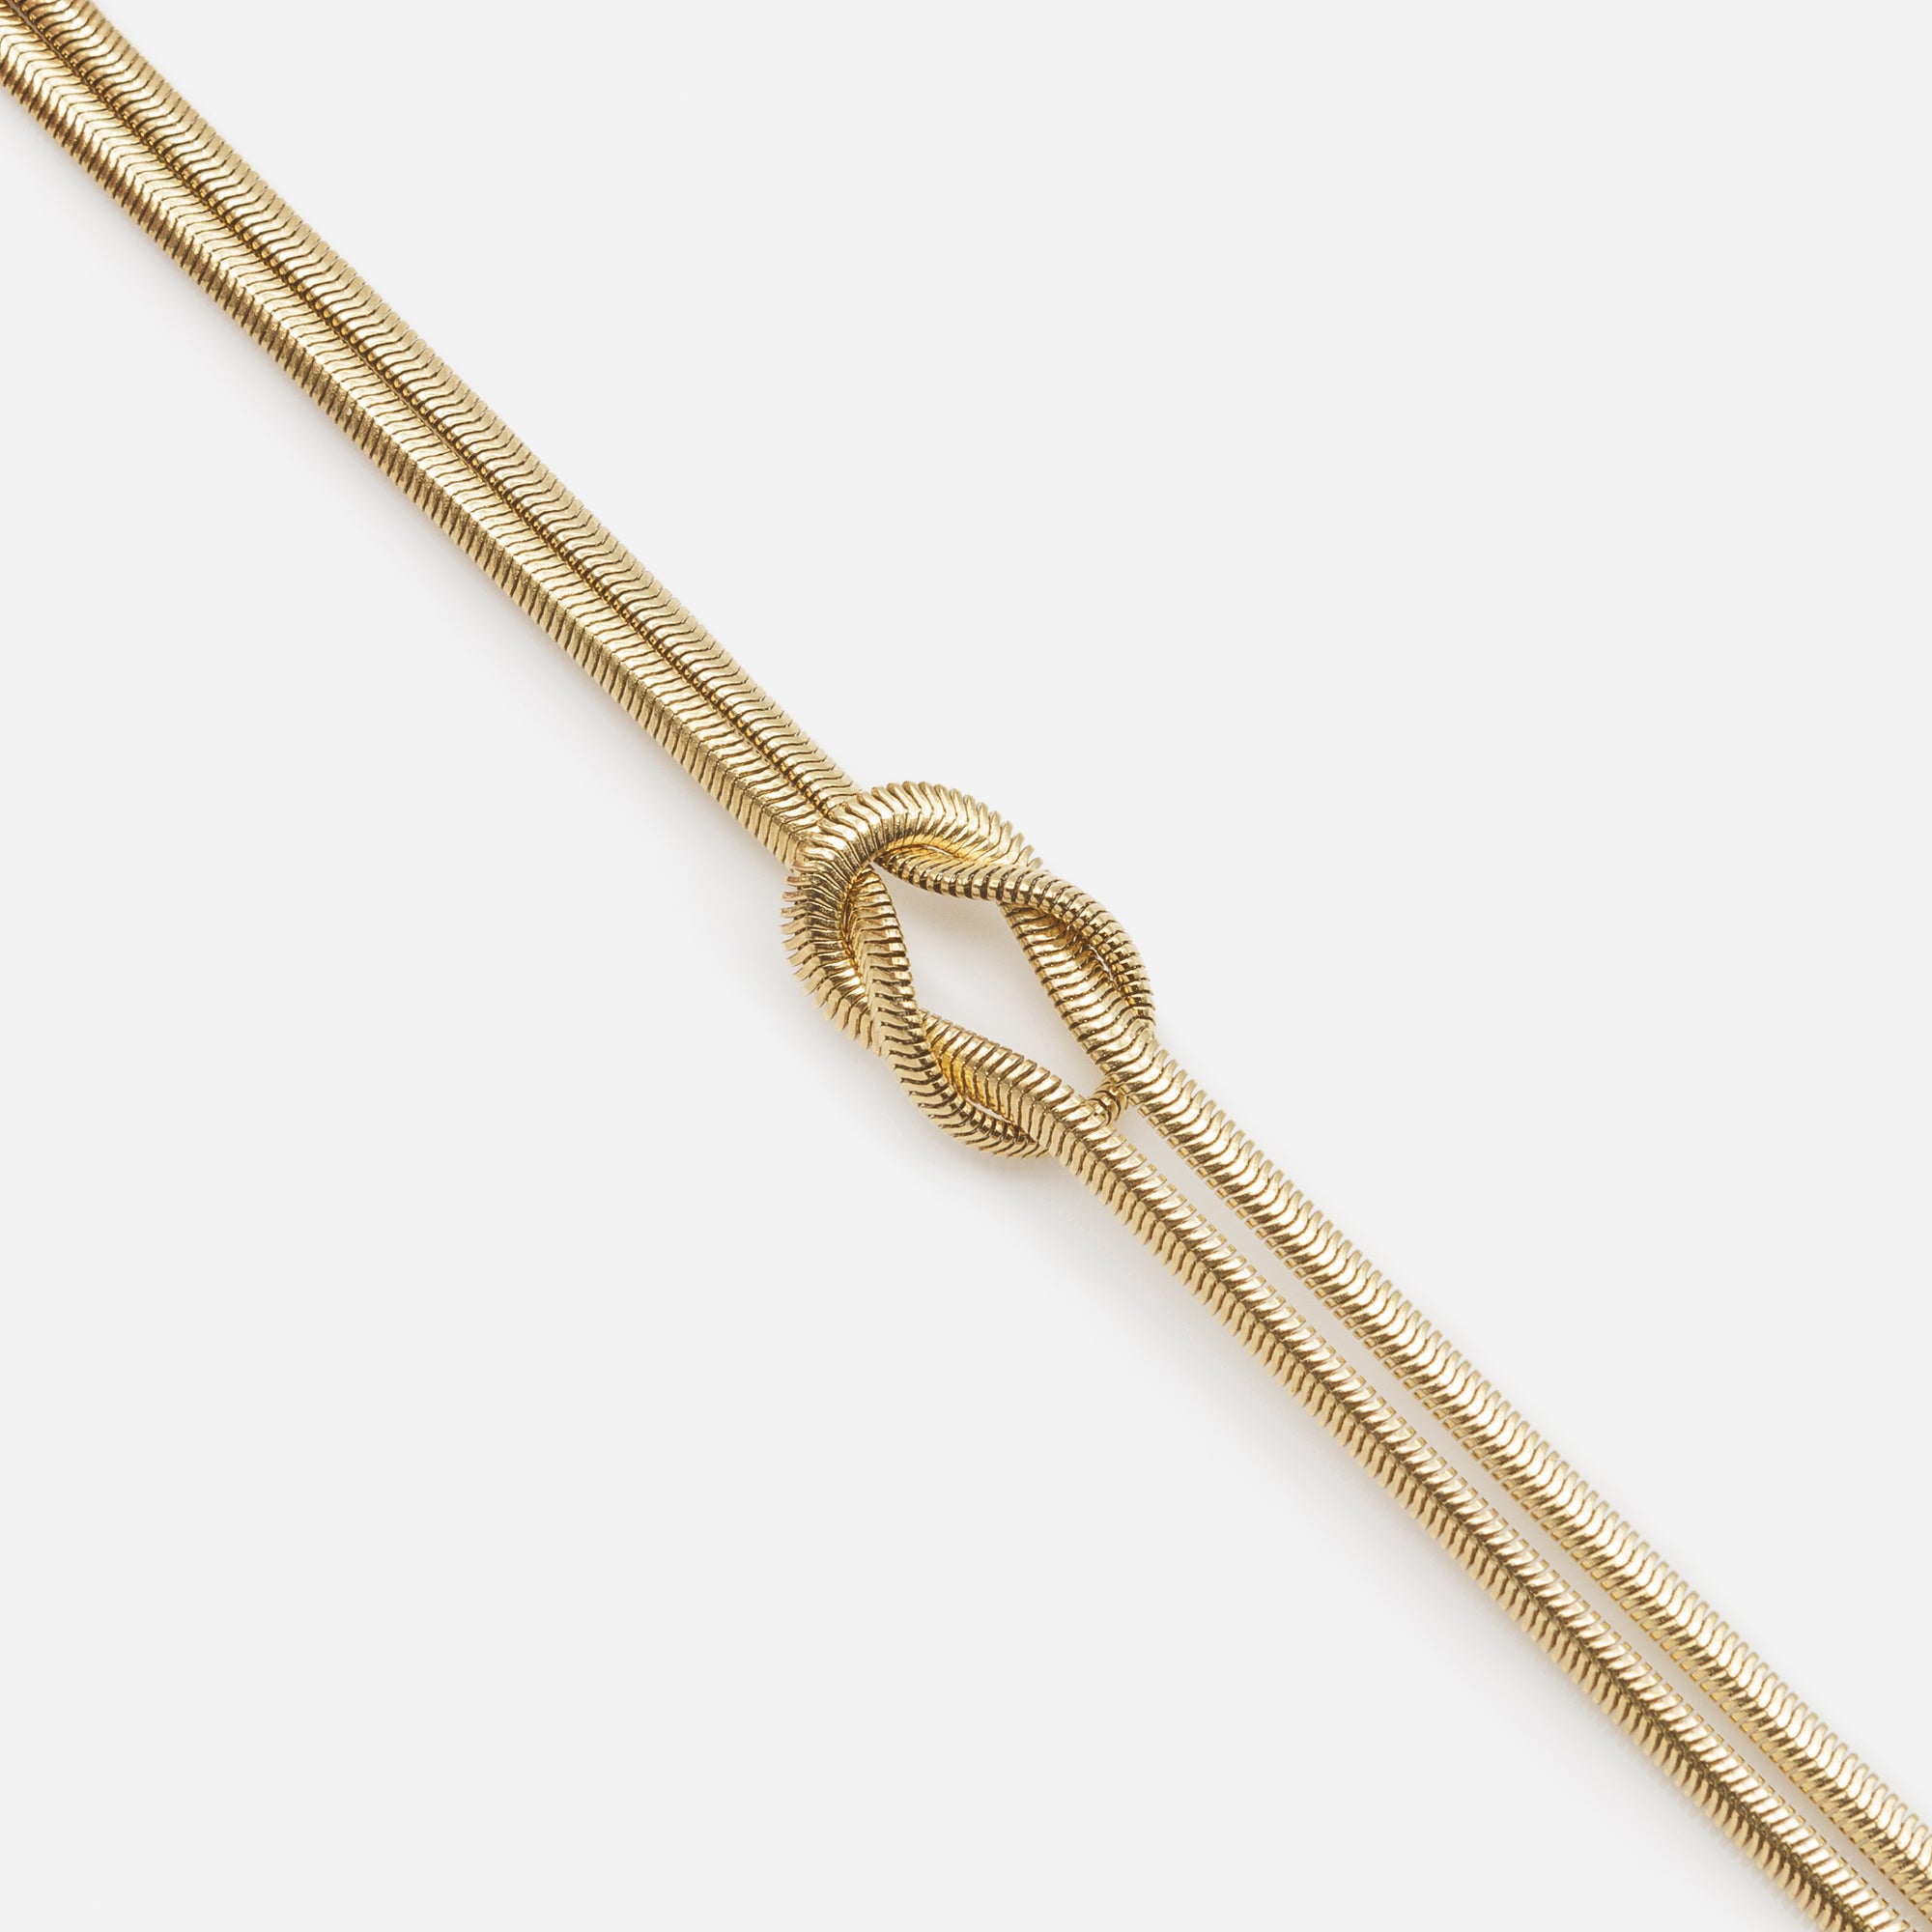 Bracelet noeud doré à mailles serpentines rondes en acier inoxydable